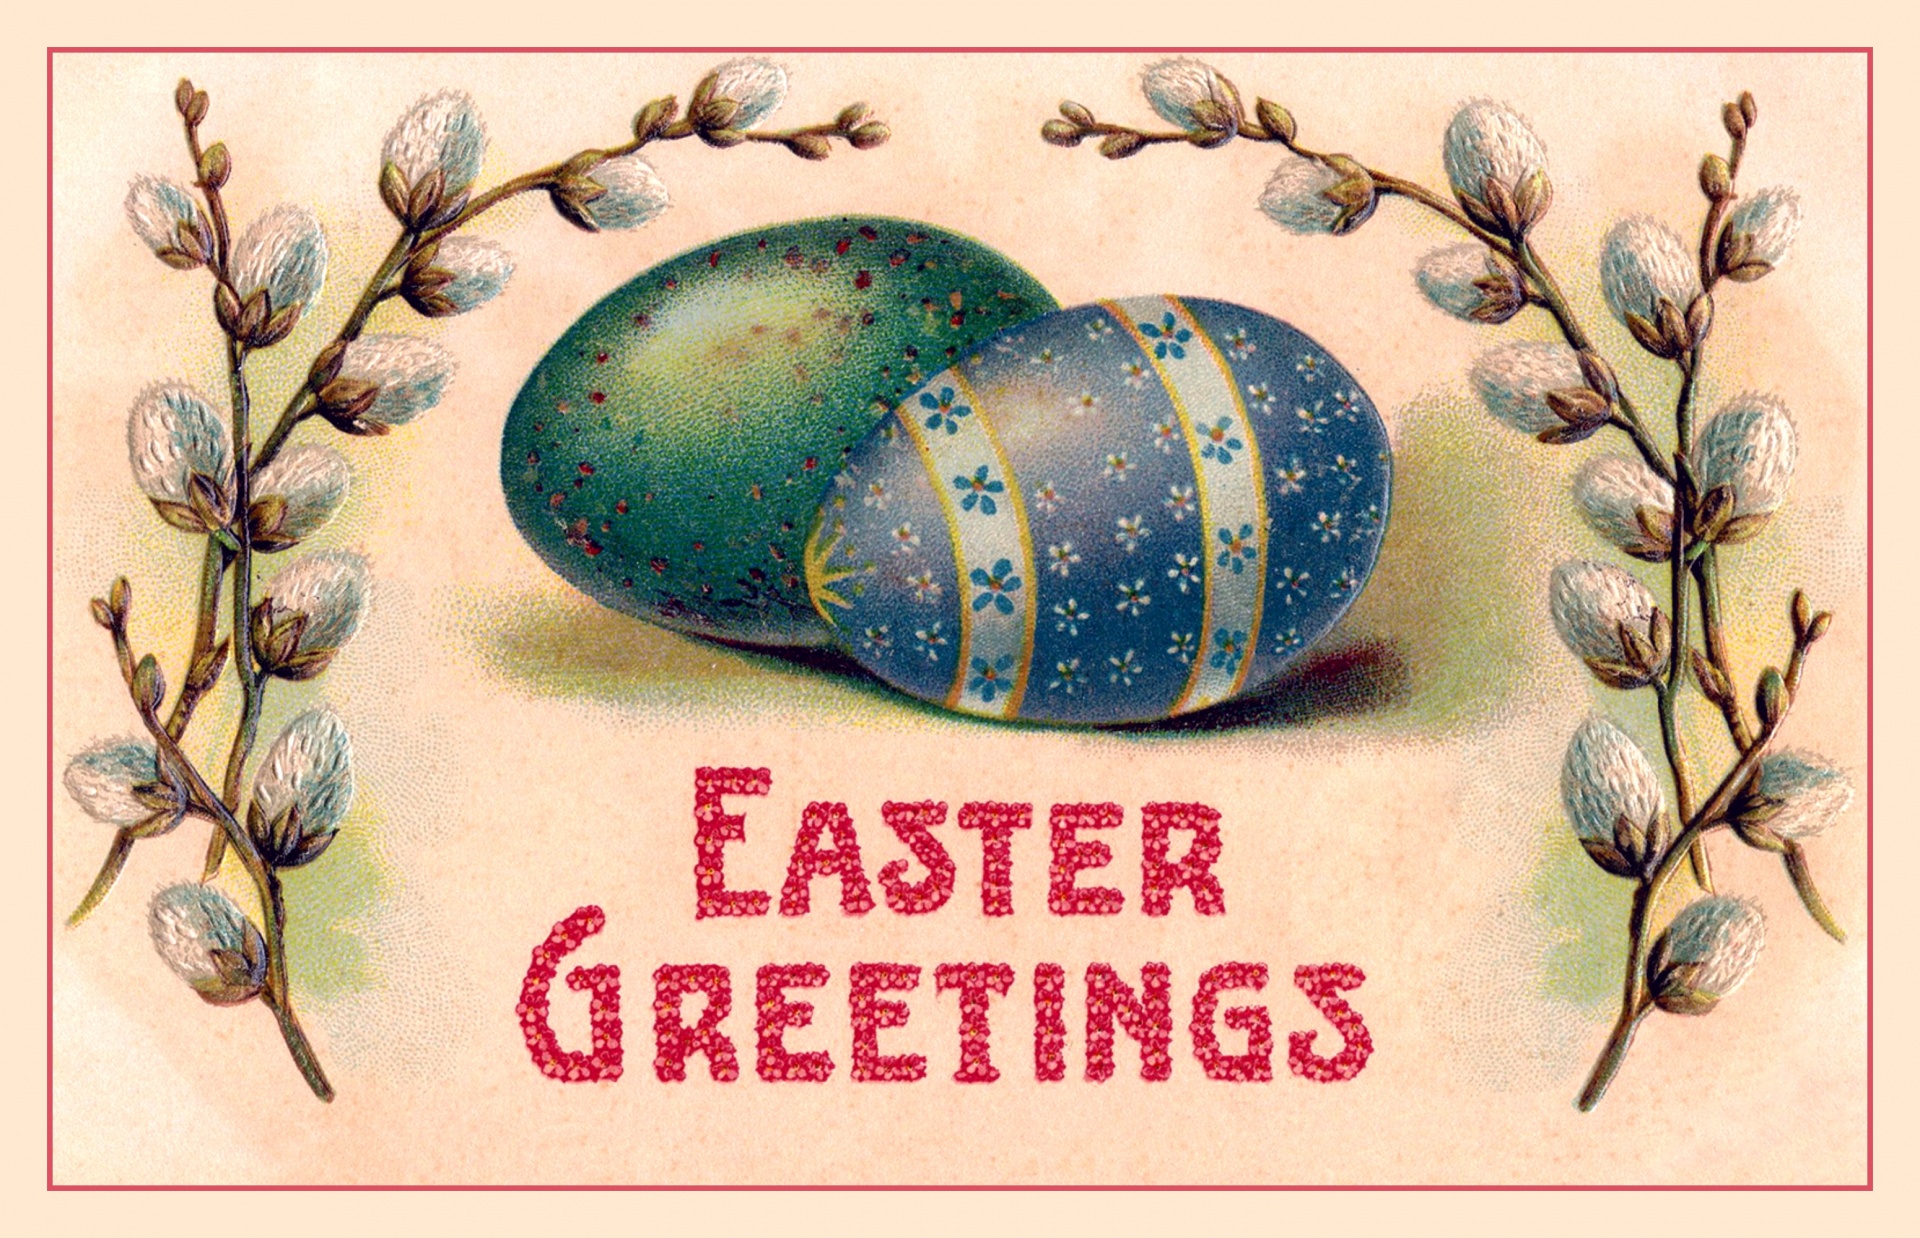 Easter Vintage Postcard Old